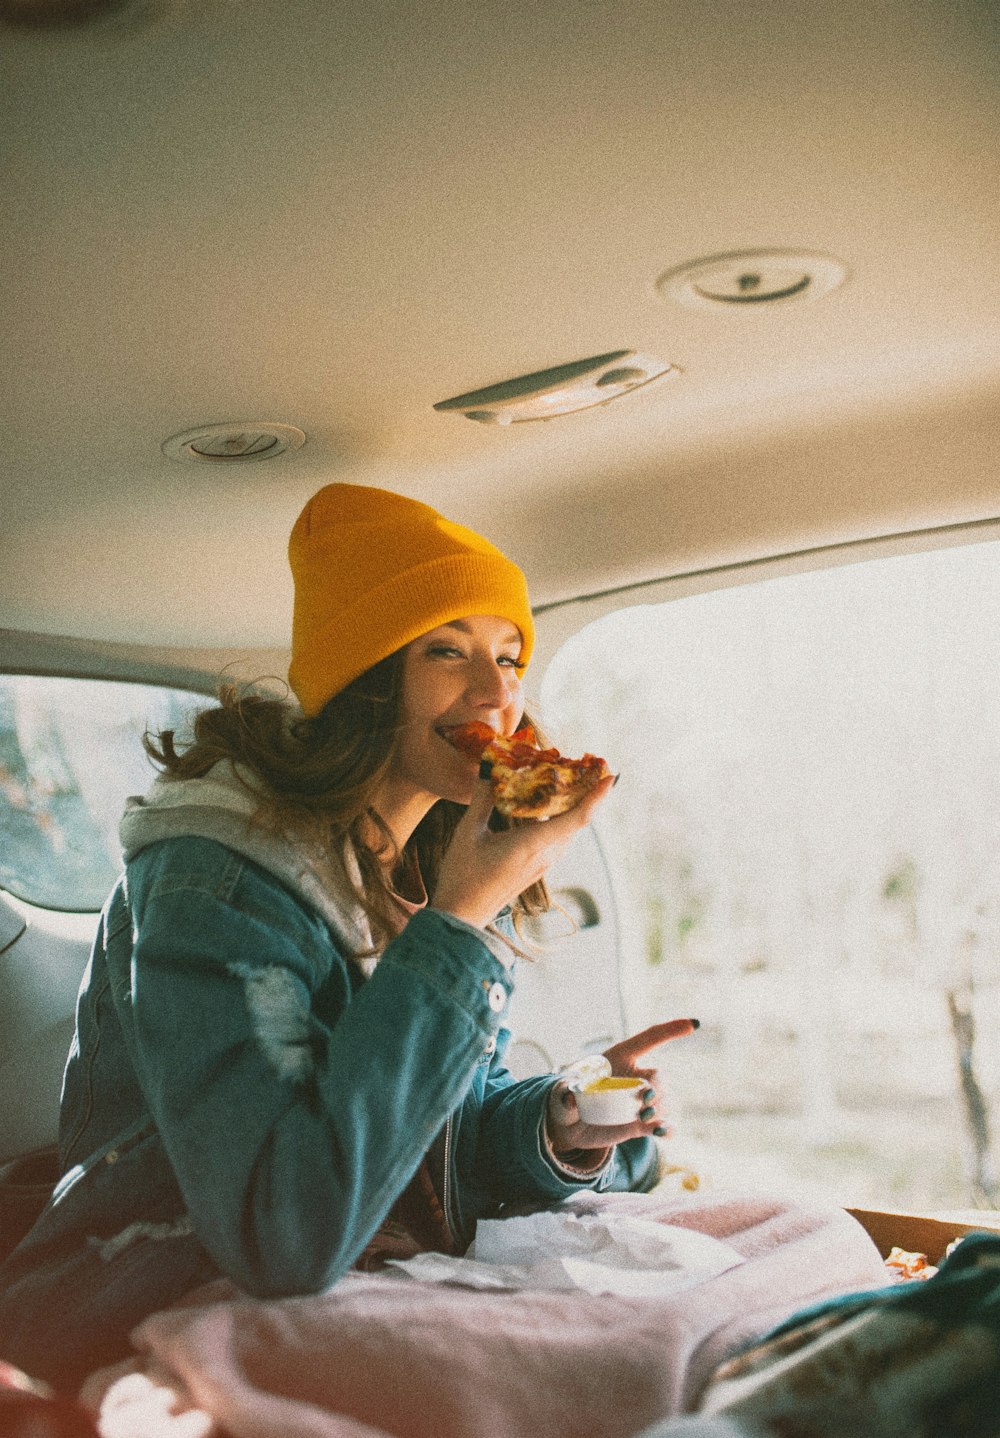 donna che mangia pizza all'interno del veicolo